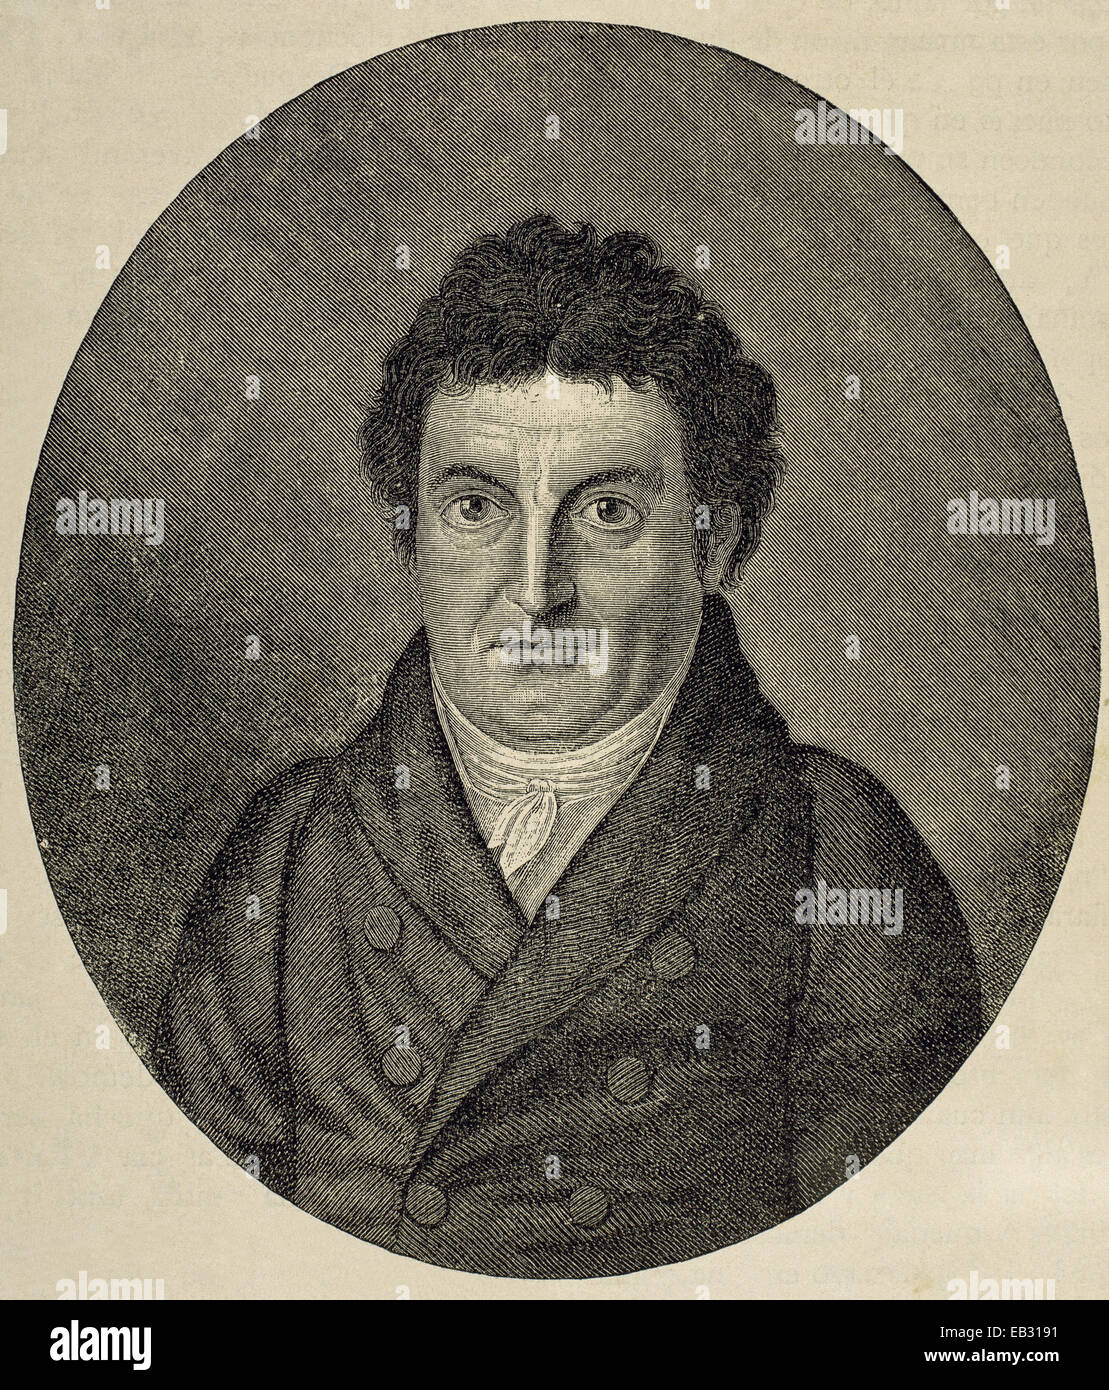 Johann Gottlieb Fichte (1762-1814). German Philosopher. Engraving by J. F. Jugel. Portrait. 19th century. Stock Photo